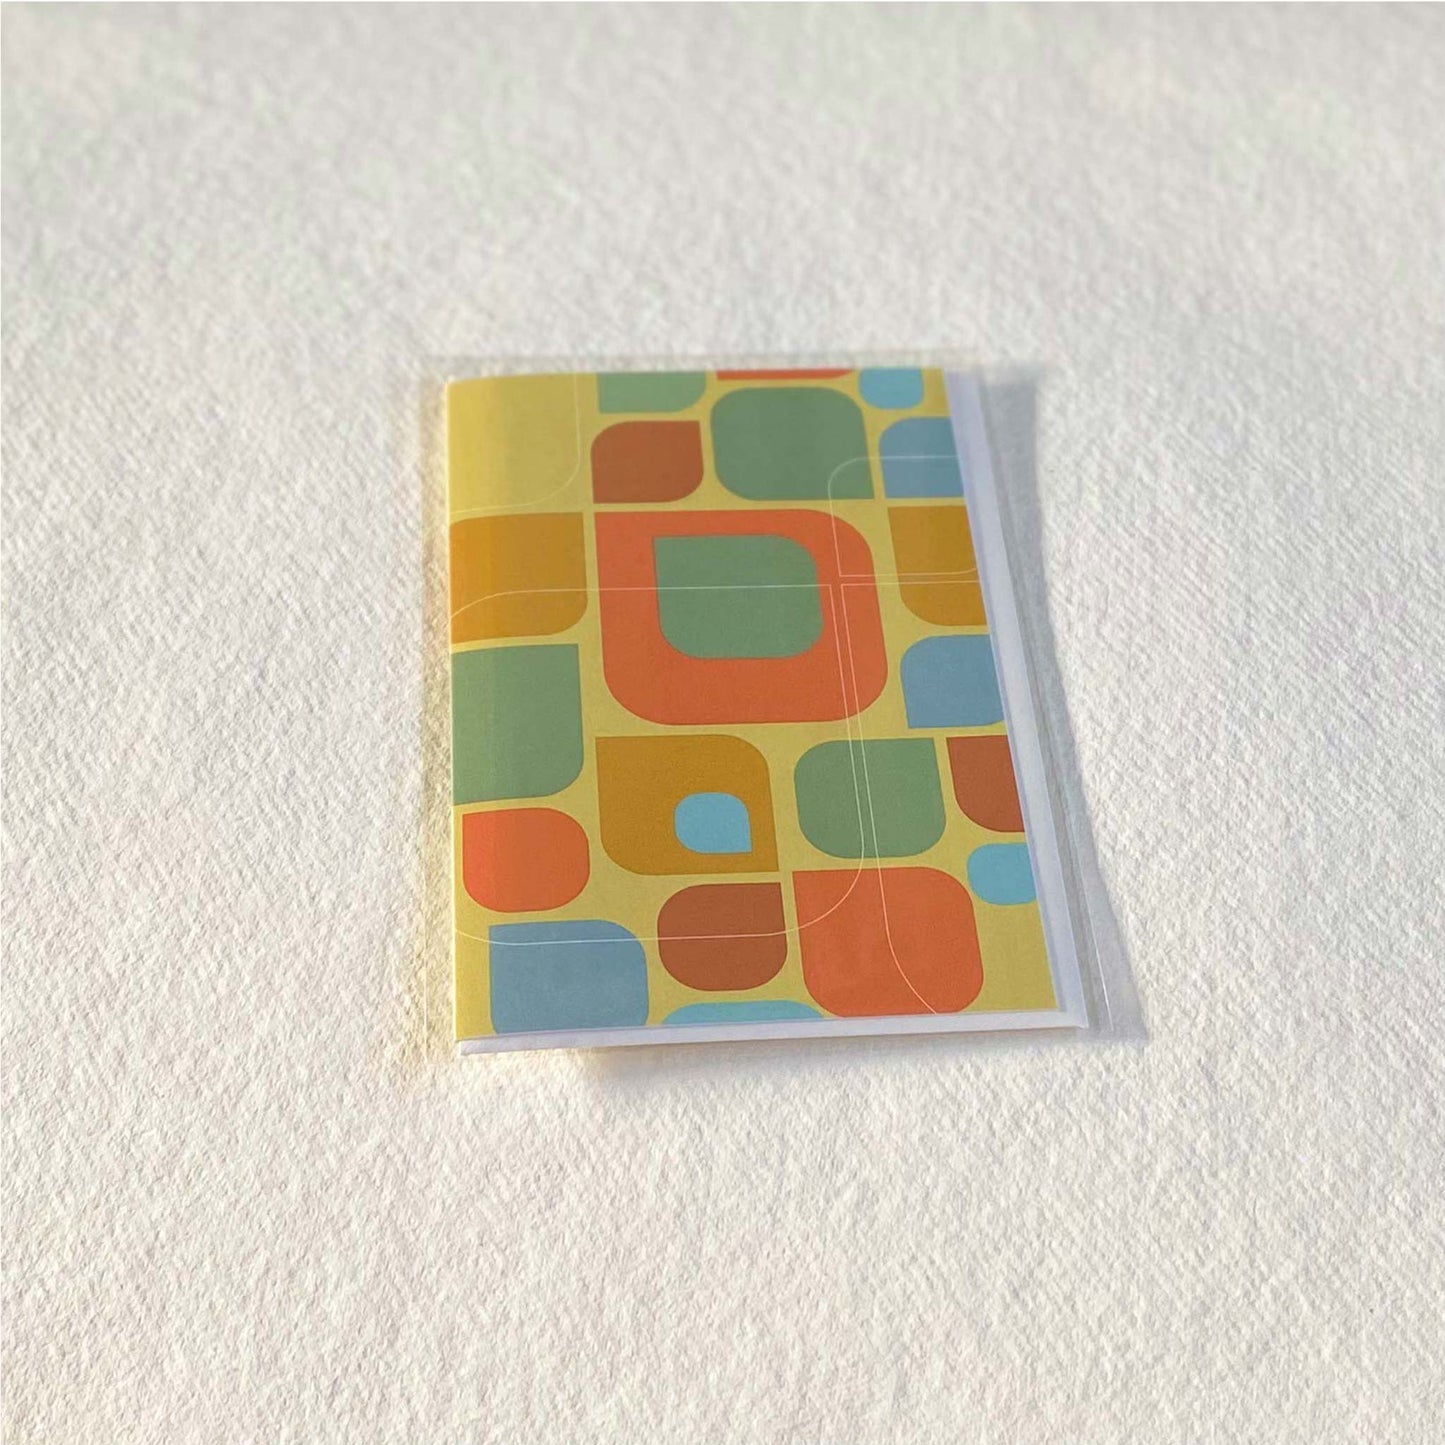 Productafbeelding, foto wenskaart "kleurmotief op oker" in zijn verpakking liggend op een achtergrond